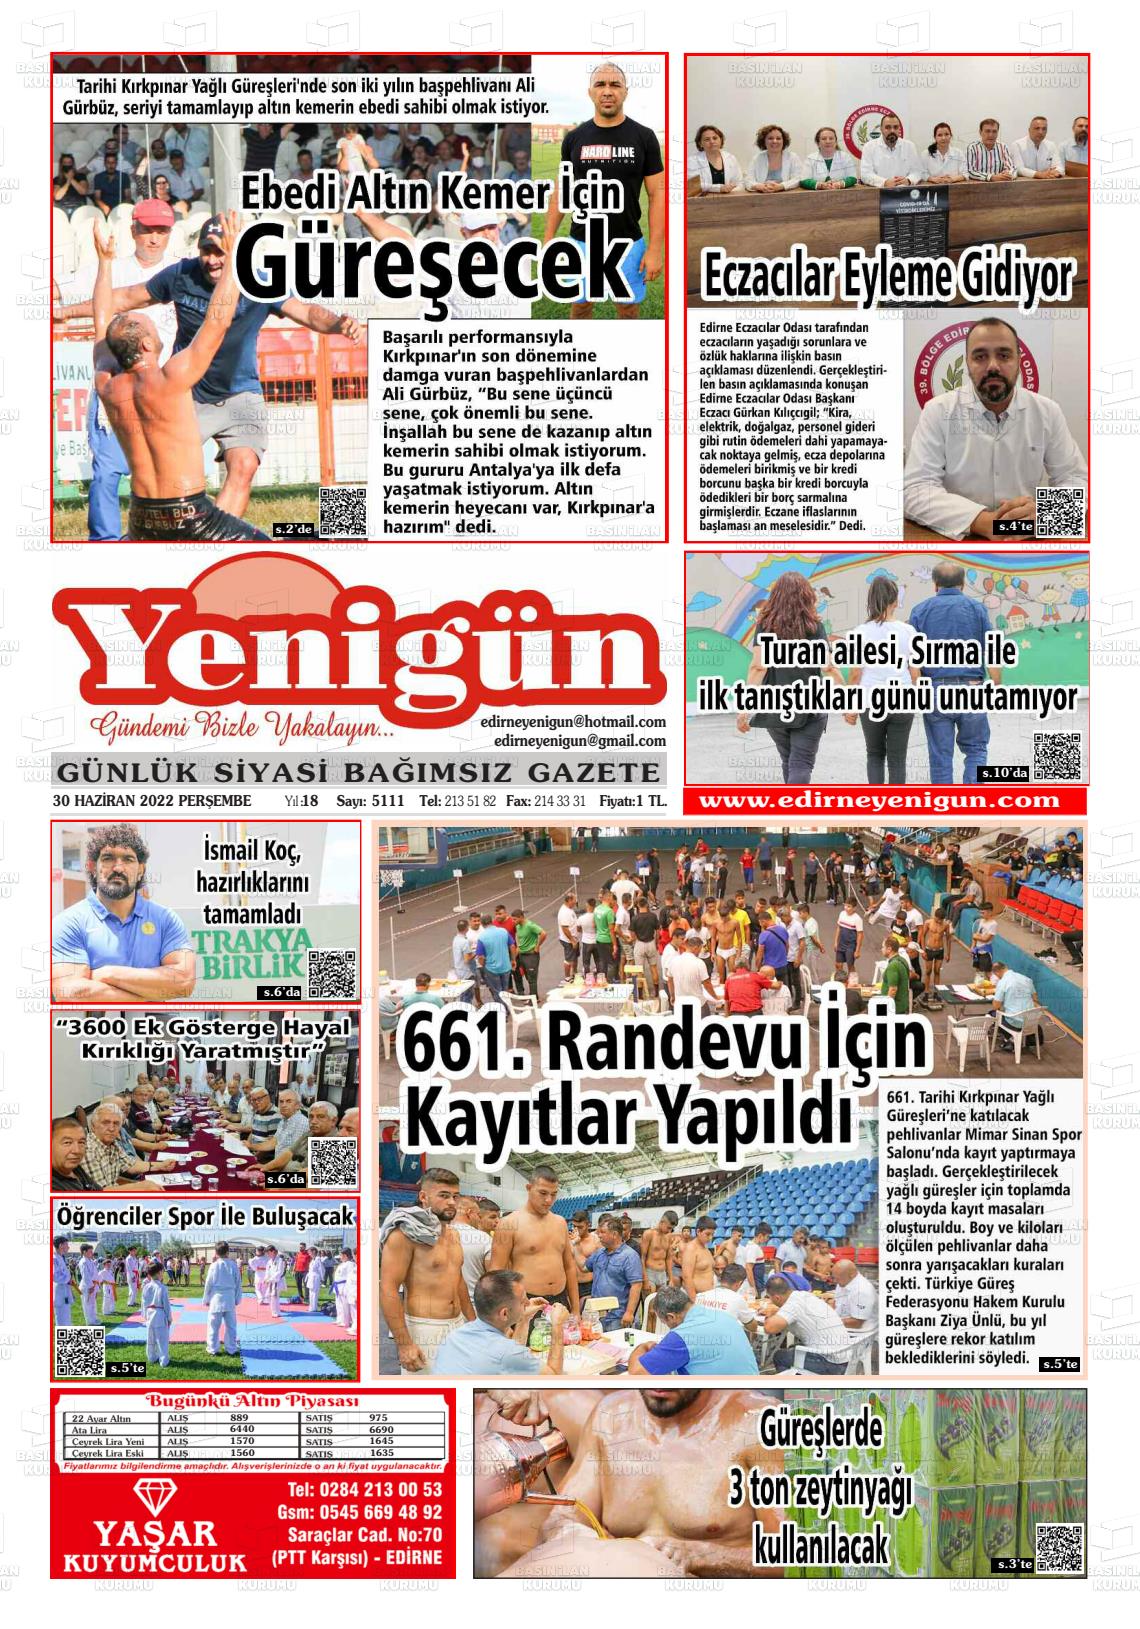 30 Haziran 2022 Edirne Yenigün Gazete Manşeti